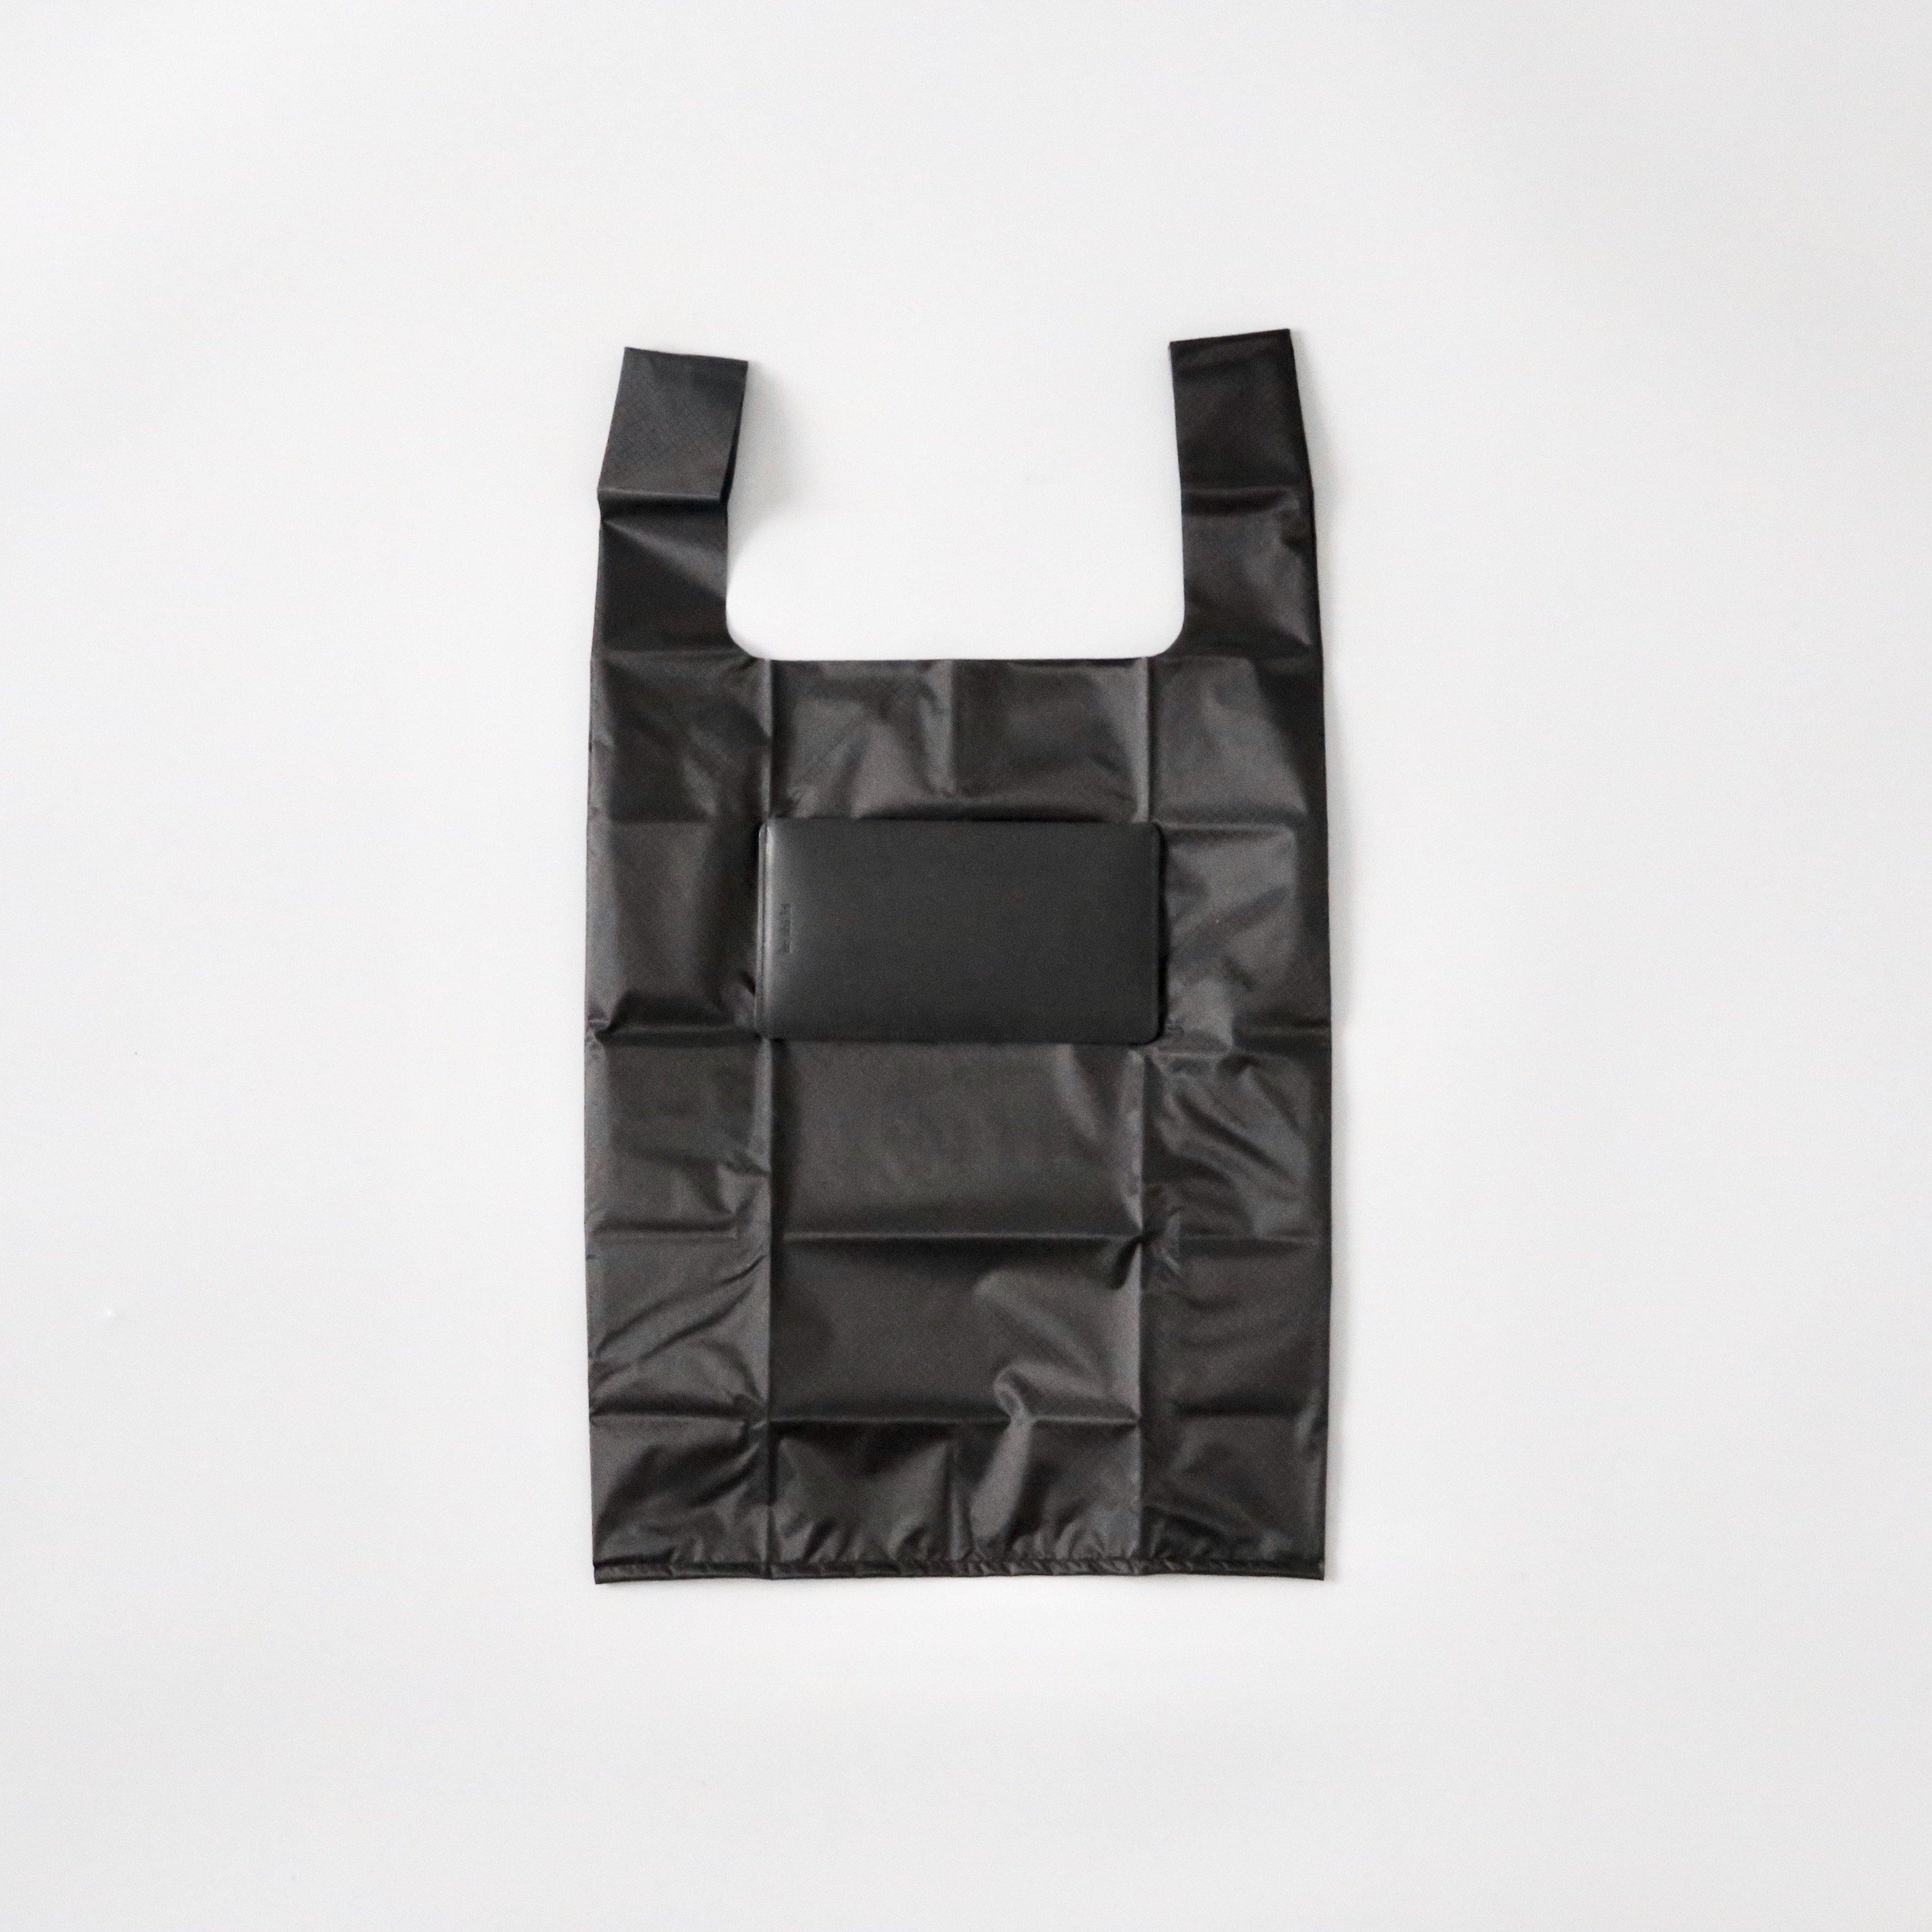 ke shi ki / Pocket bag -Black- (2size) - HOEK